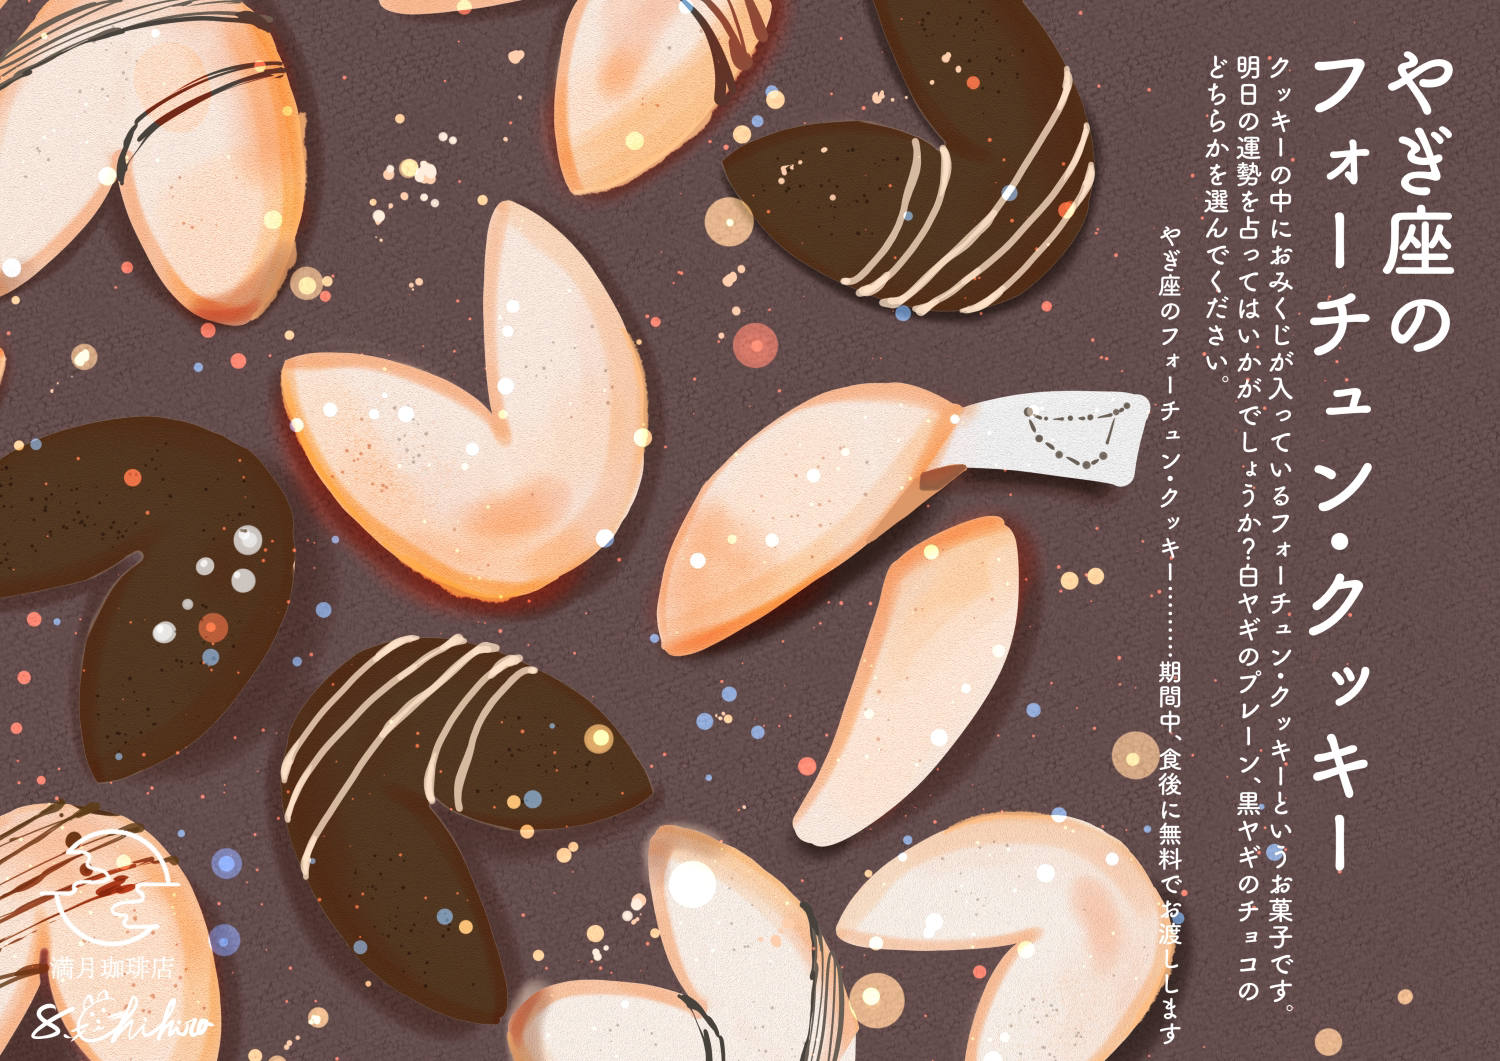 摩羯座幸运饼干-食物お菓子